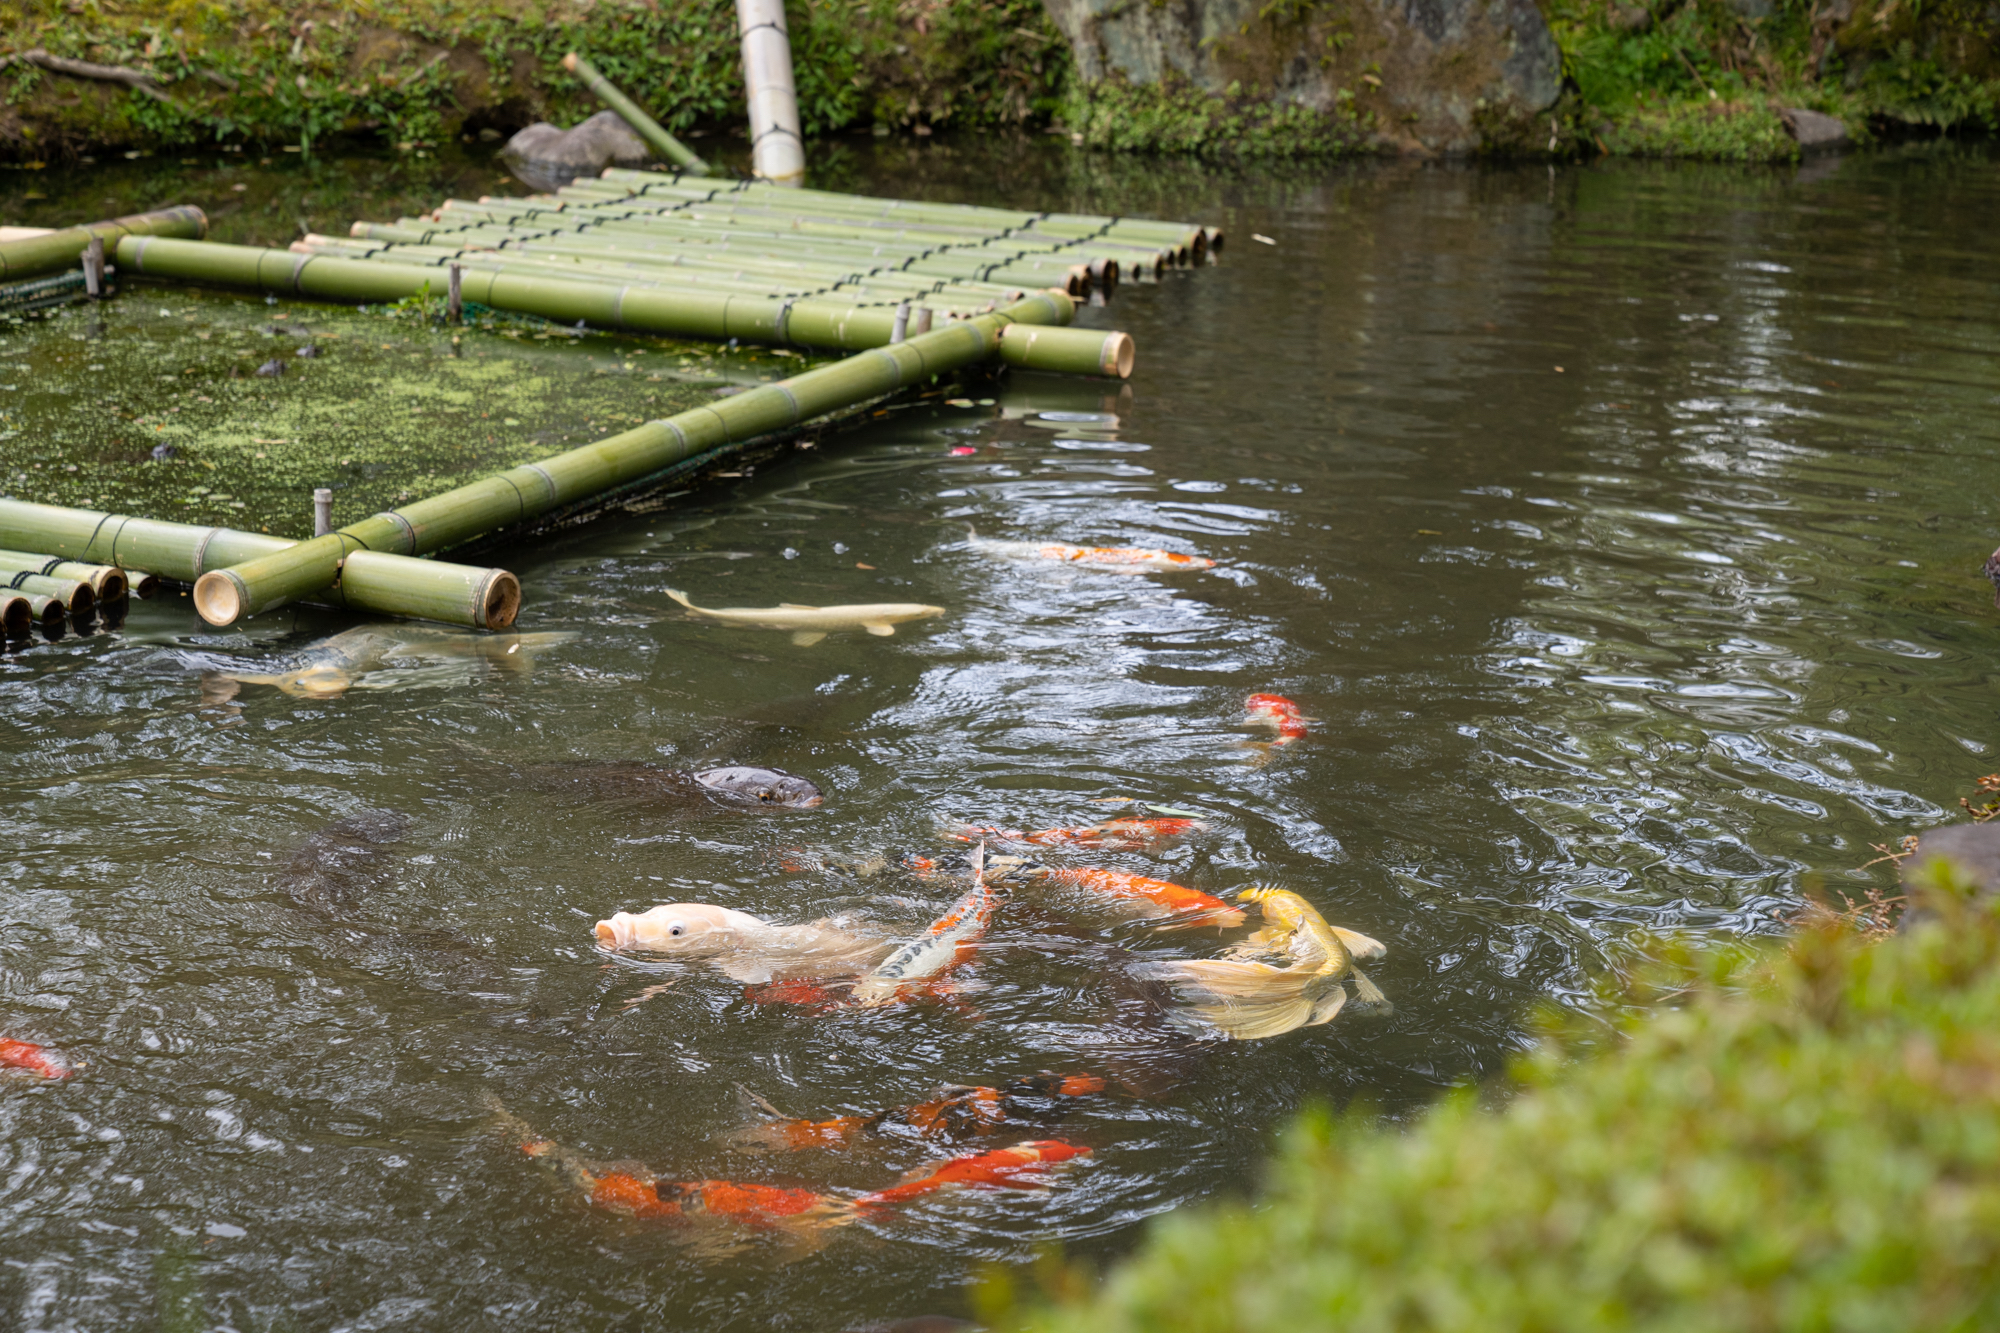 庭園は一面美しい苔が覆い、地下水を利用した池には鯉が見える。